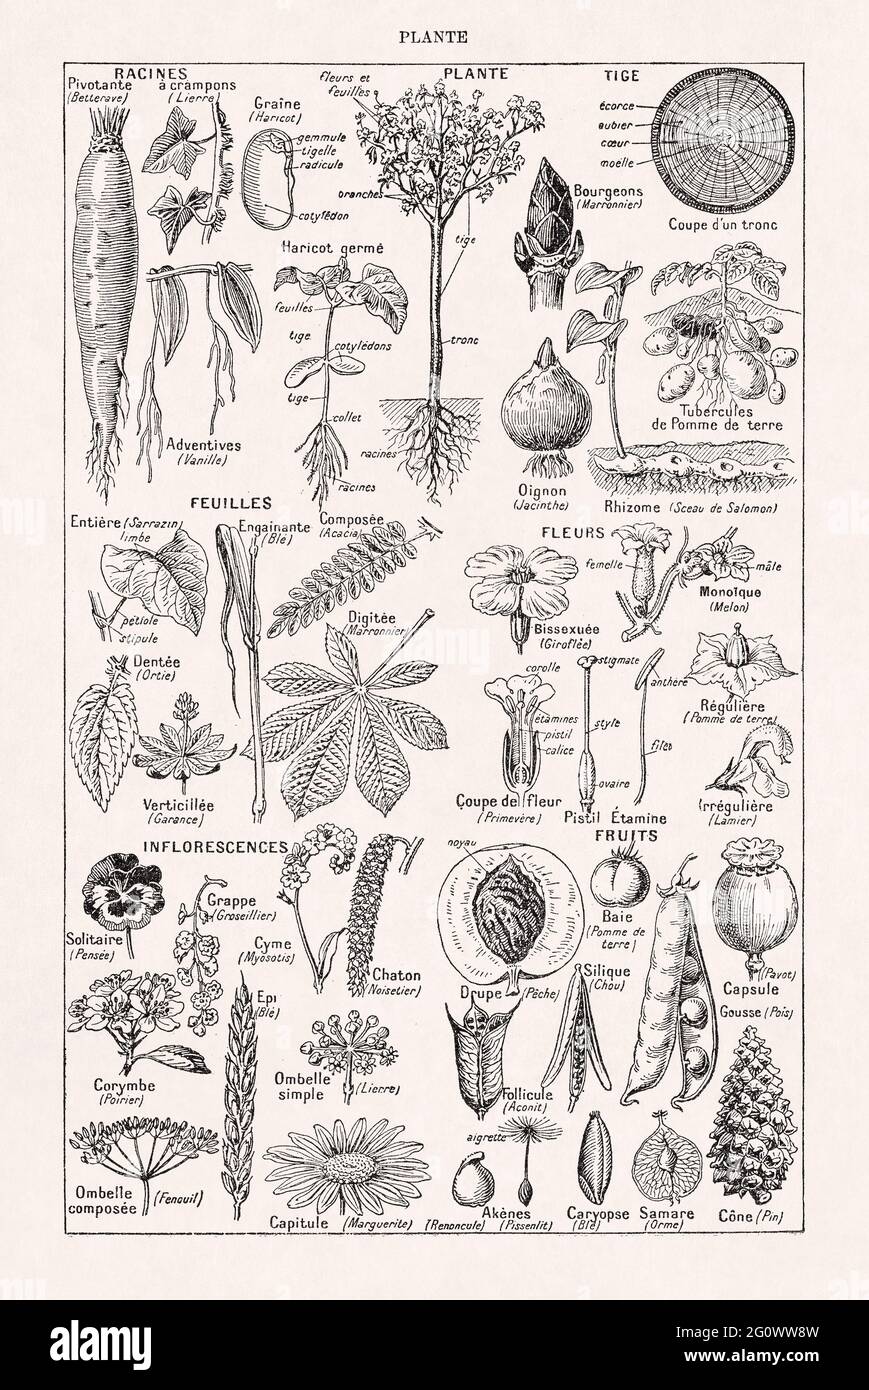 Alte Illustration über Pflanzen im französischen Wörterbuch 'Dictionnaire complet illustré' des Herausgebers Larousse im Jahr 1889. Stockfoto